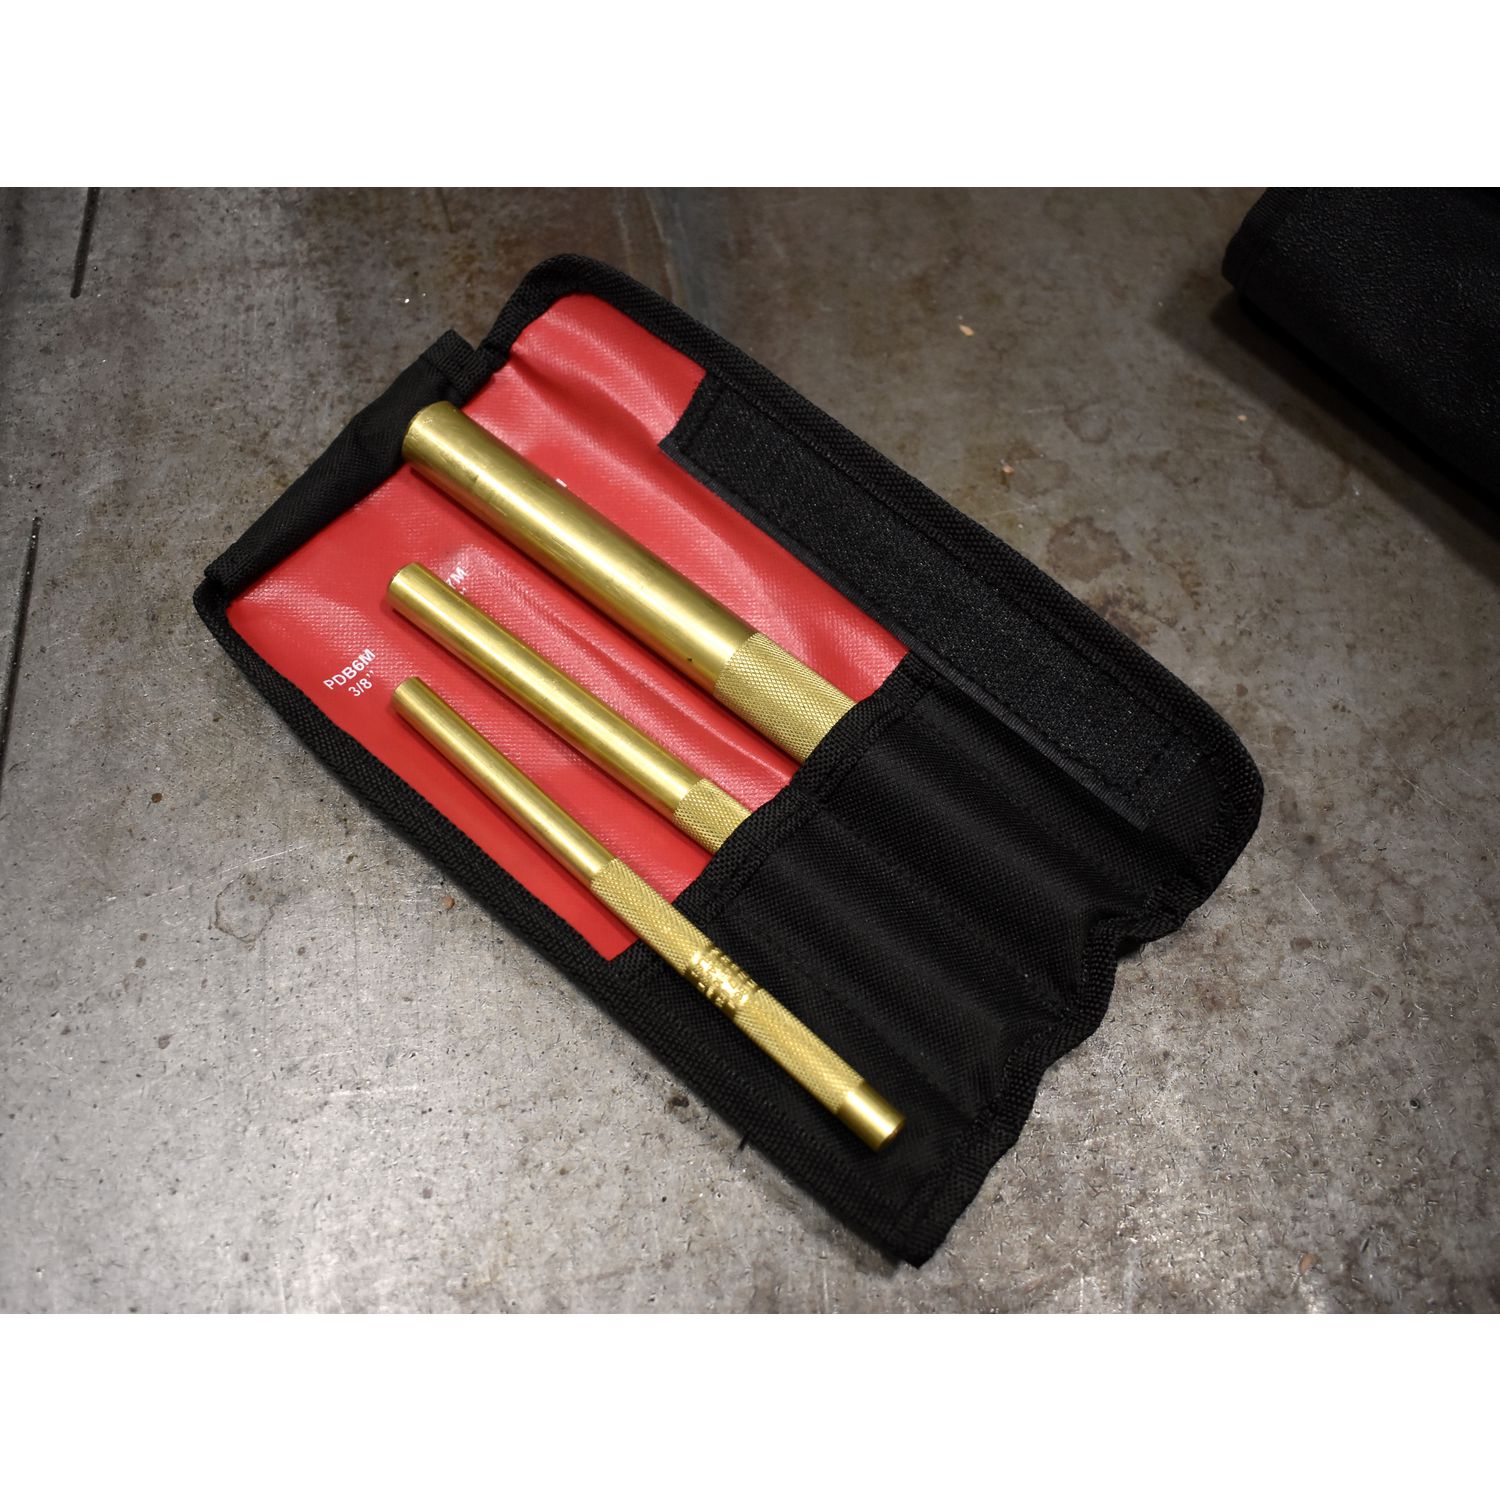 Mayhew 4Pc. Brass Punch Set 1/4 Solid, 3/8 Drift, 3/8 Pin, 1/4 Pin  (62277)